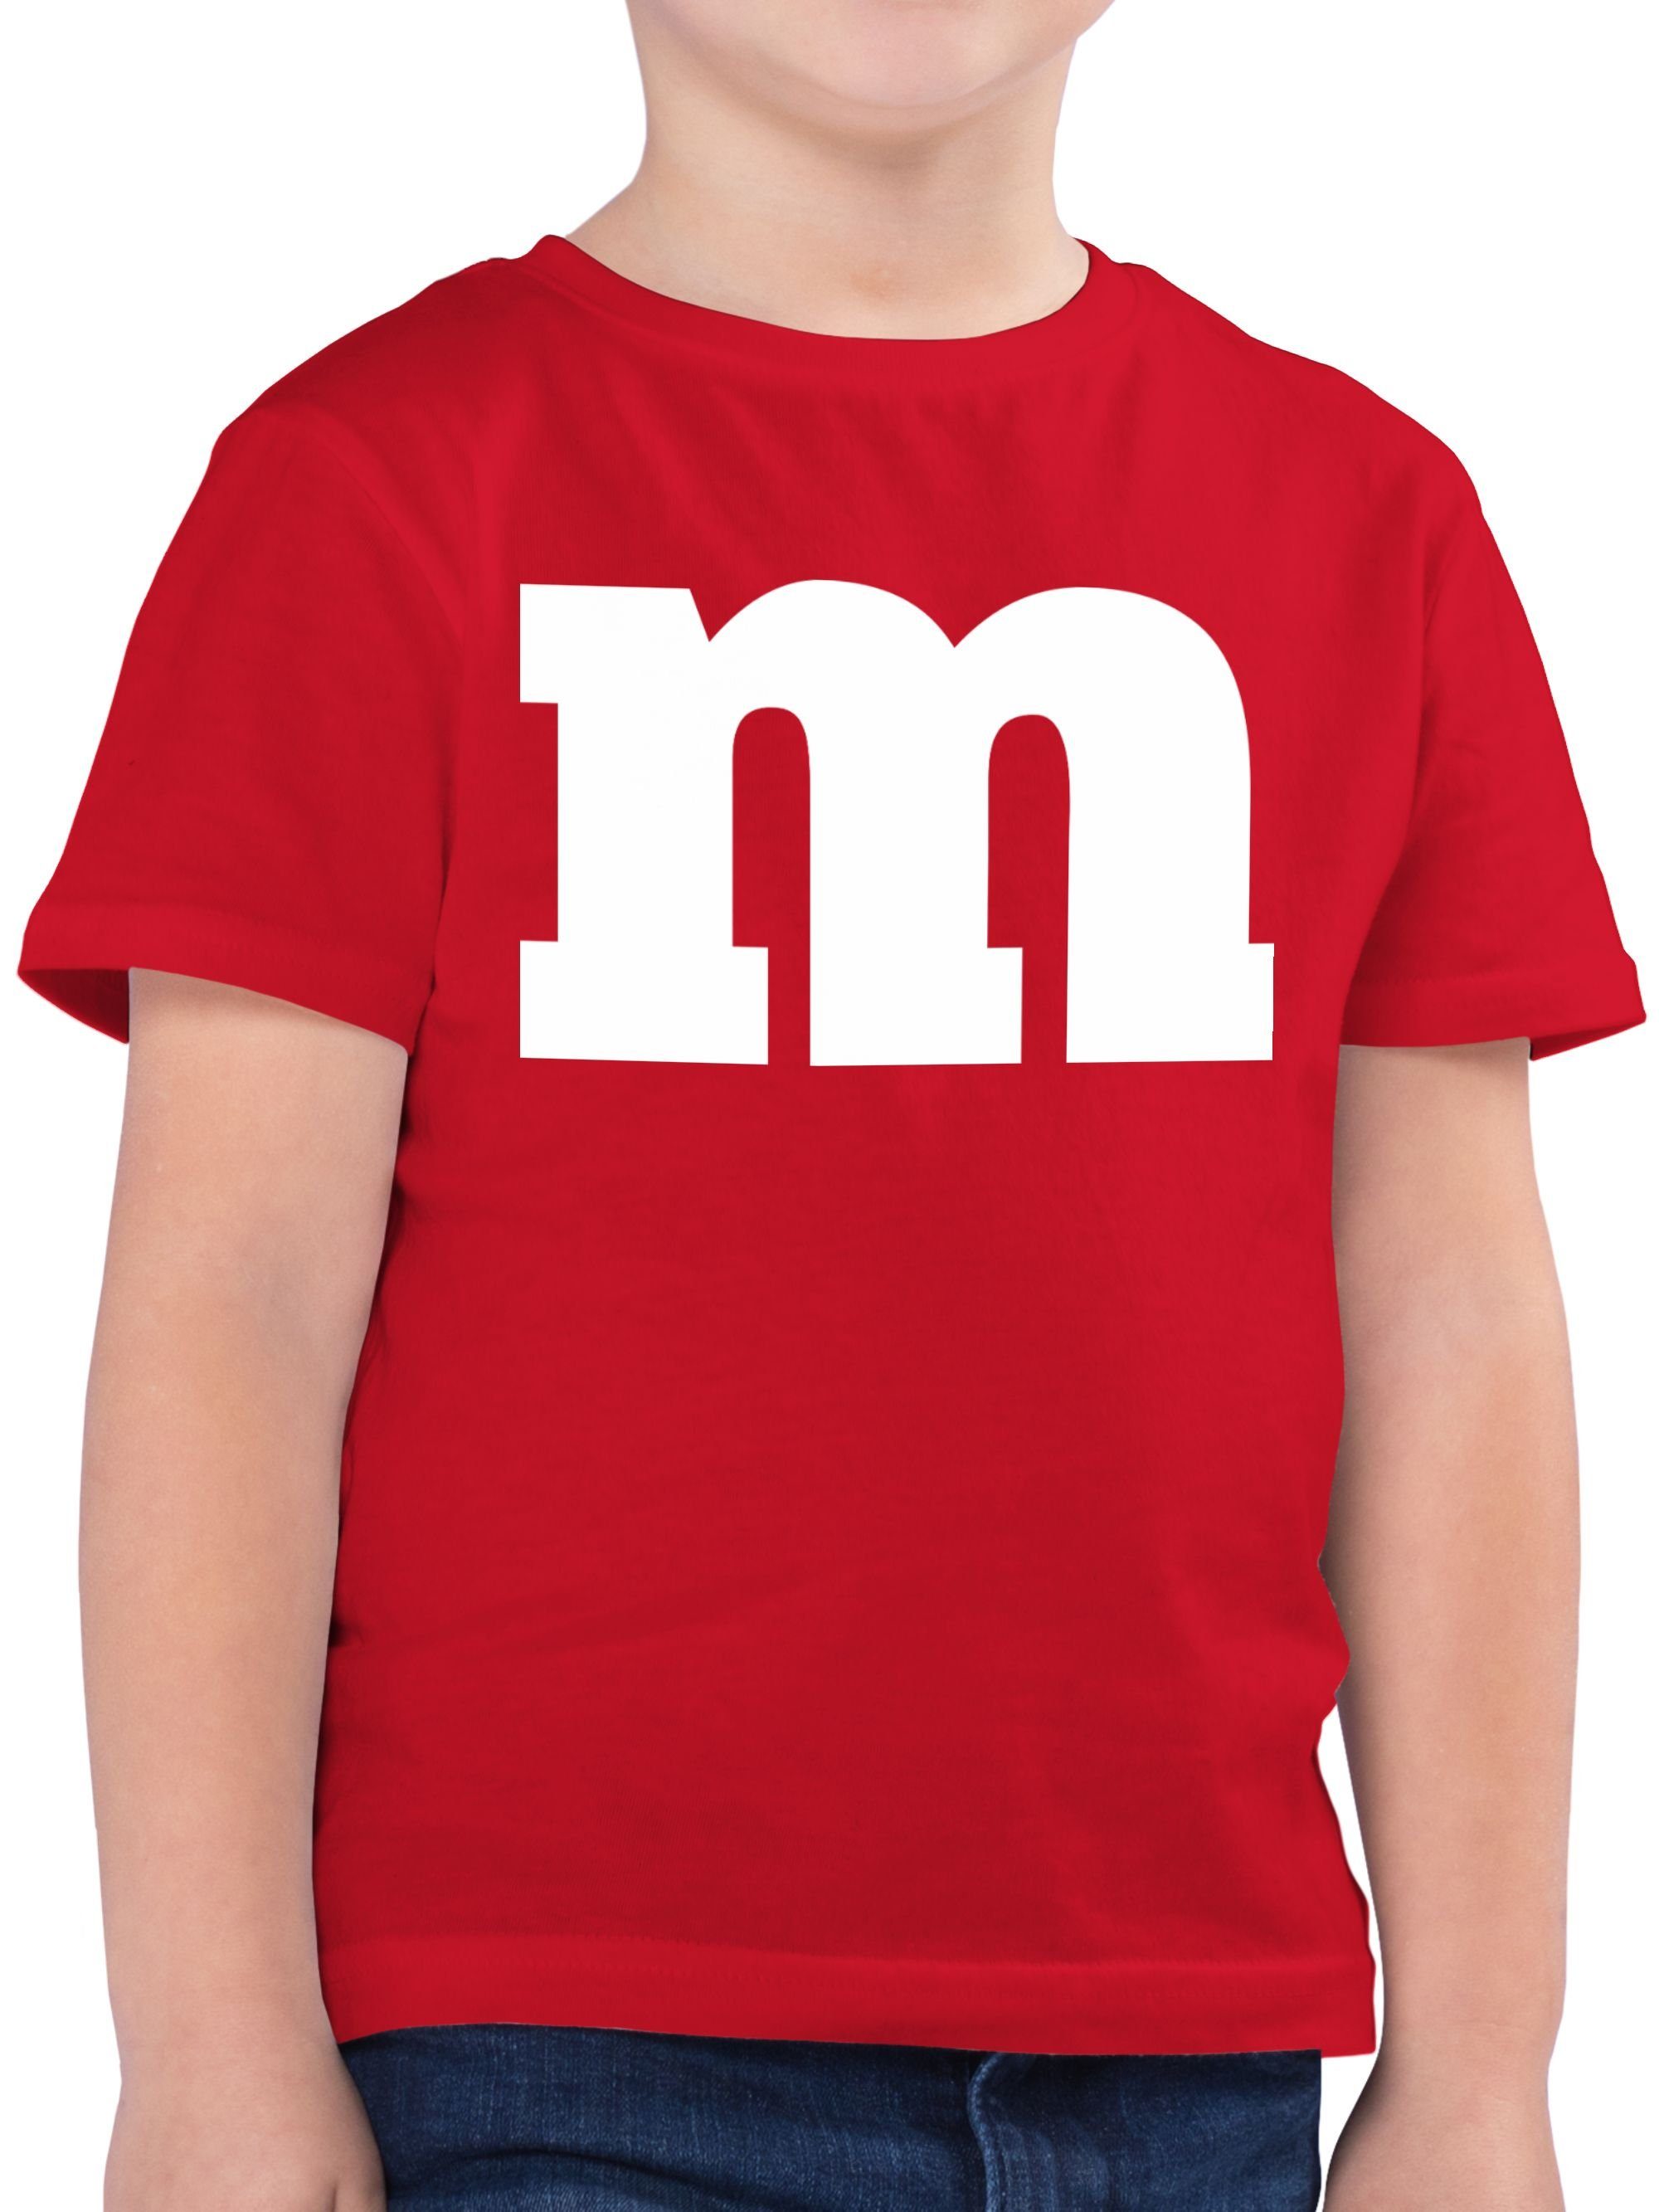 & M Fasching T-Shirt Rot 3 Aufdruck Shirtracer Karneval